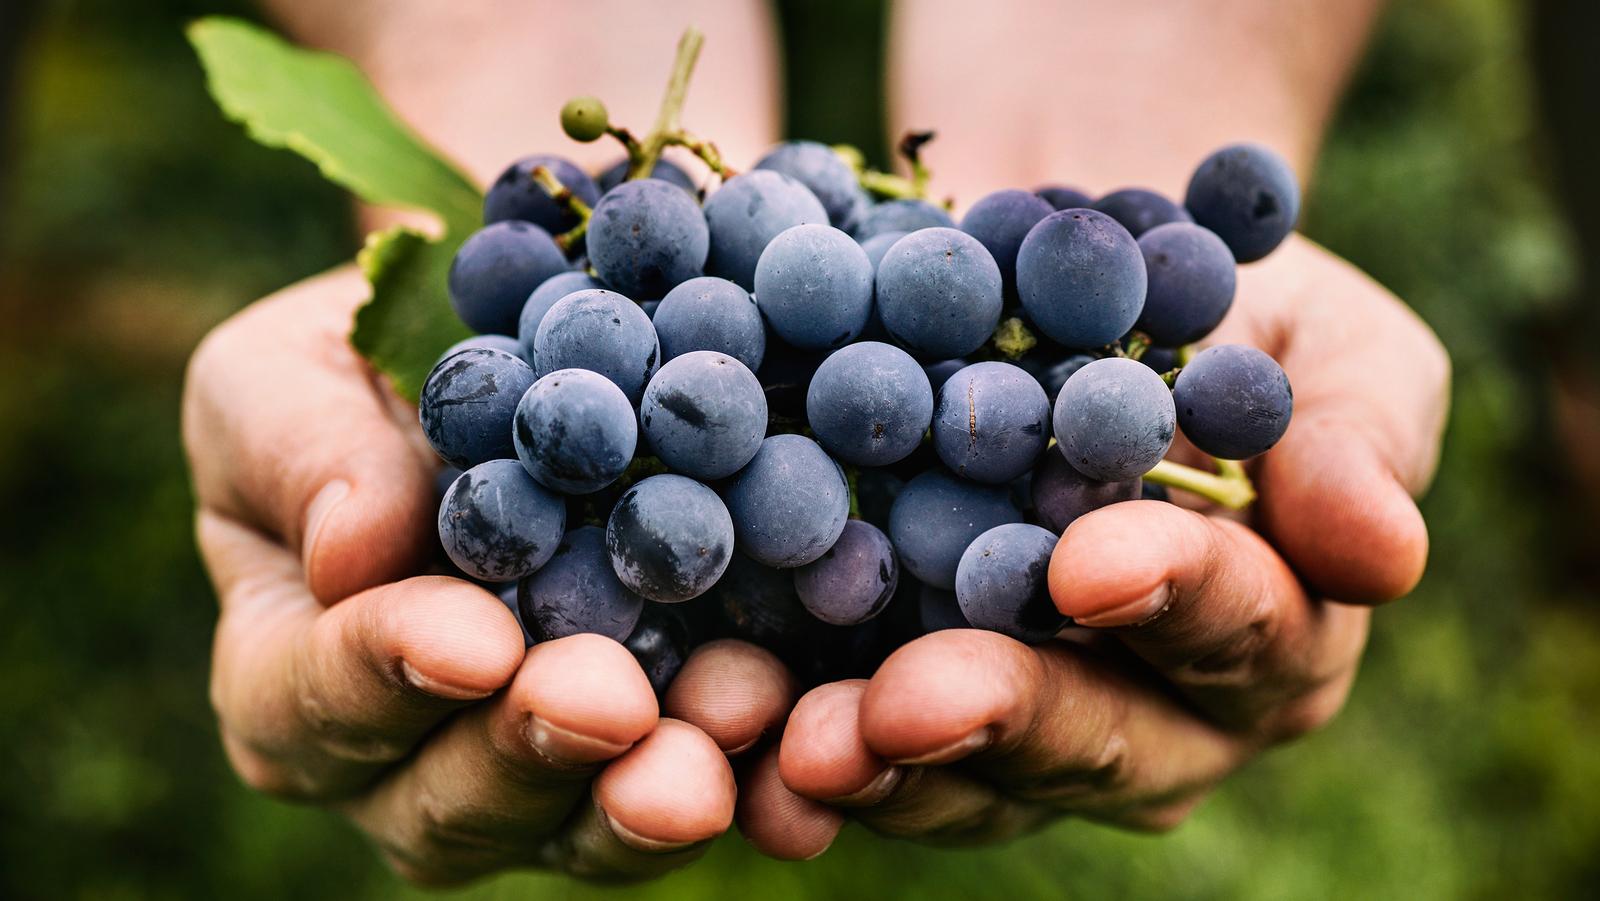 Szőlő gyógyhatásai: miért együnk szőlőt?